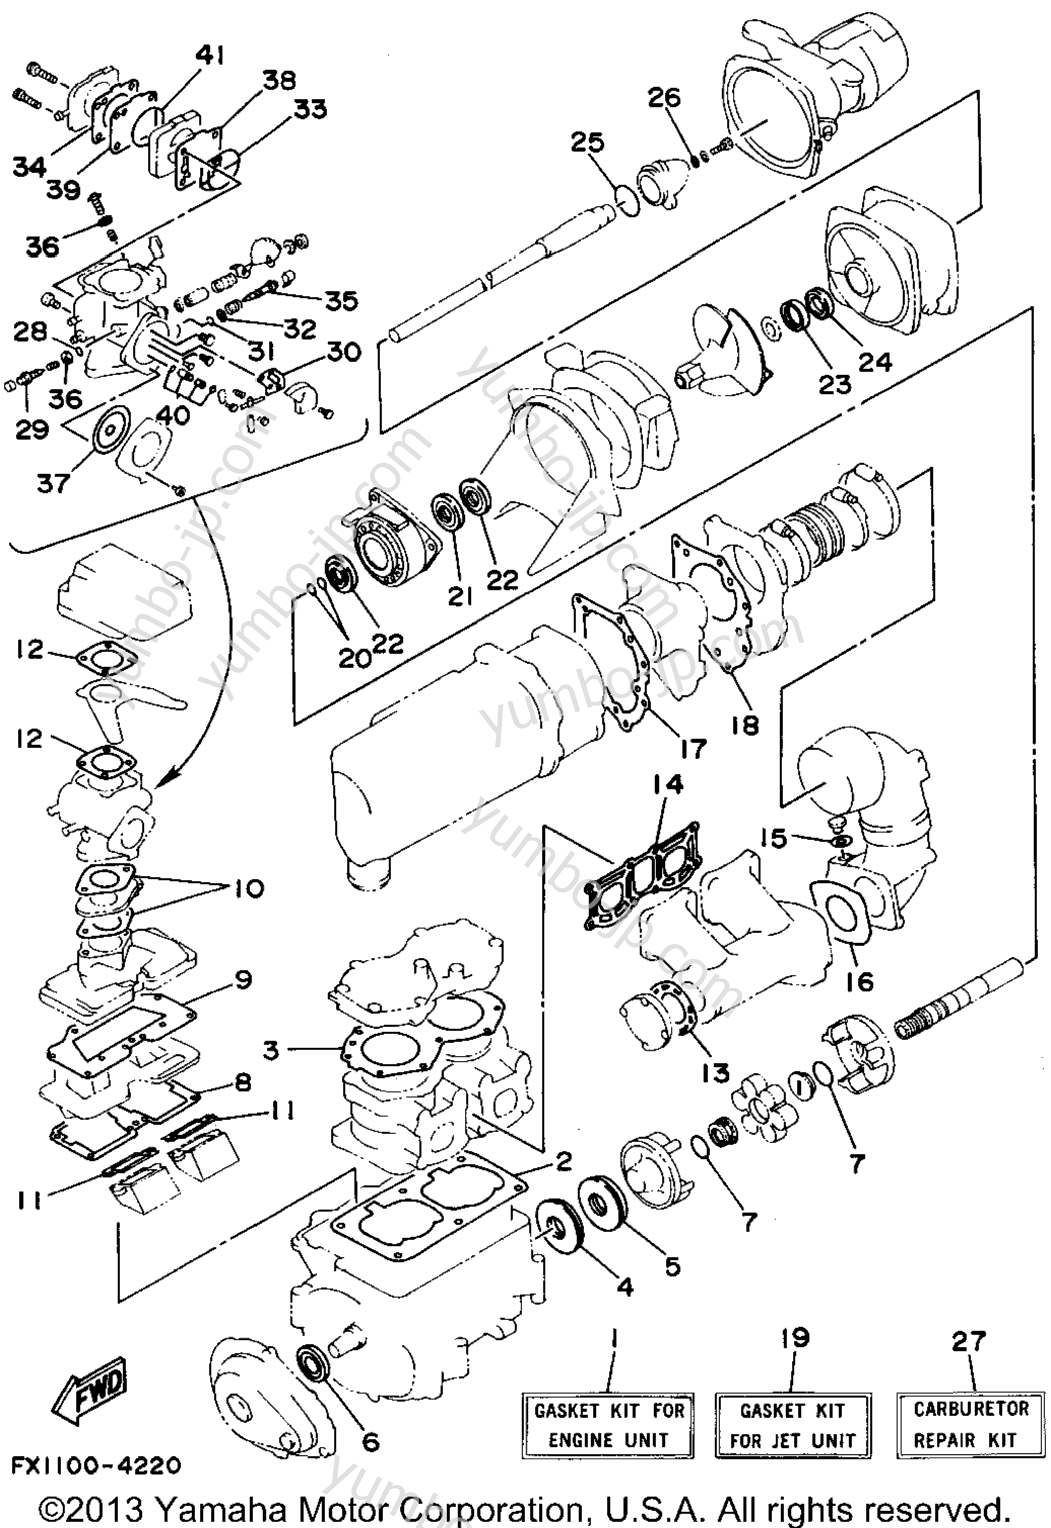 Ремкомплект / Набор прокладок для гидроциклов YAMAHA FX-1 (FX700S) 1994 г.